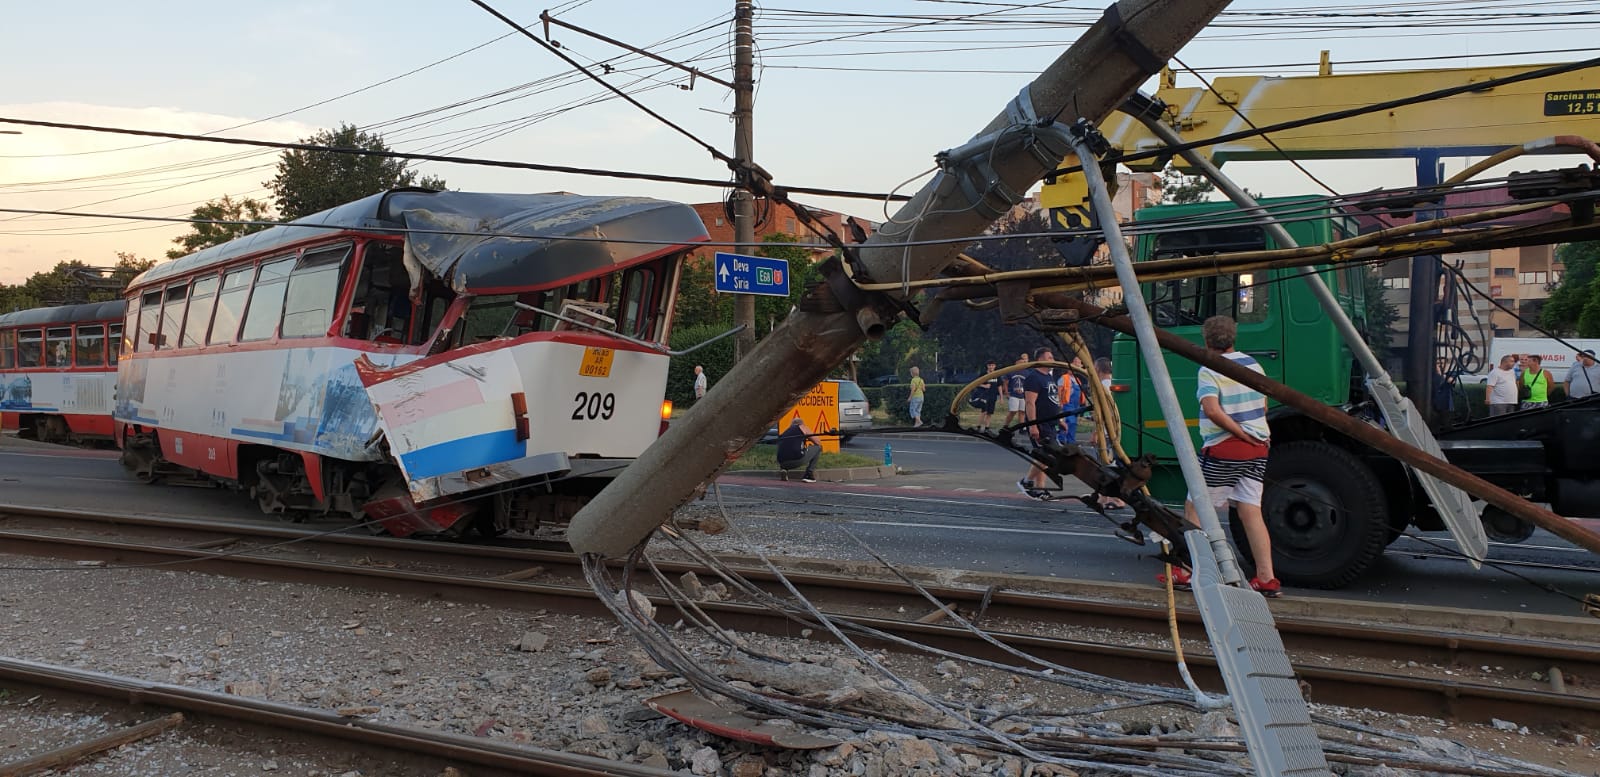 Video. Tramvai deraiat la Arad. O pasageră a fost rănită și dusă la spital - Imaginea 2